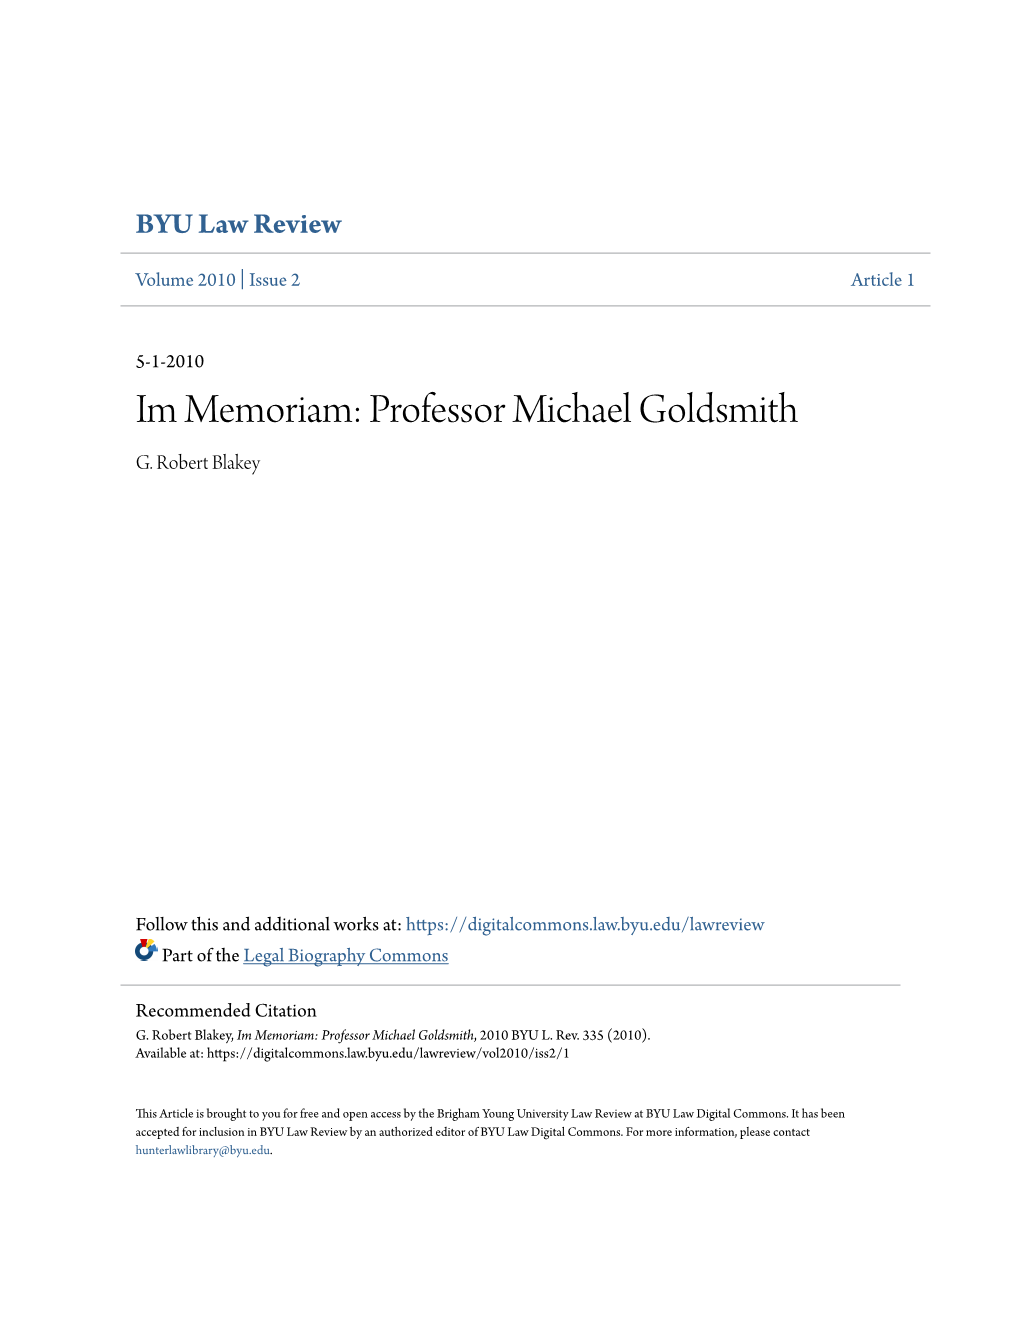 Im Memoriam: Professor Michael Goldsmith G